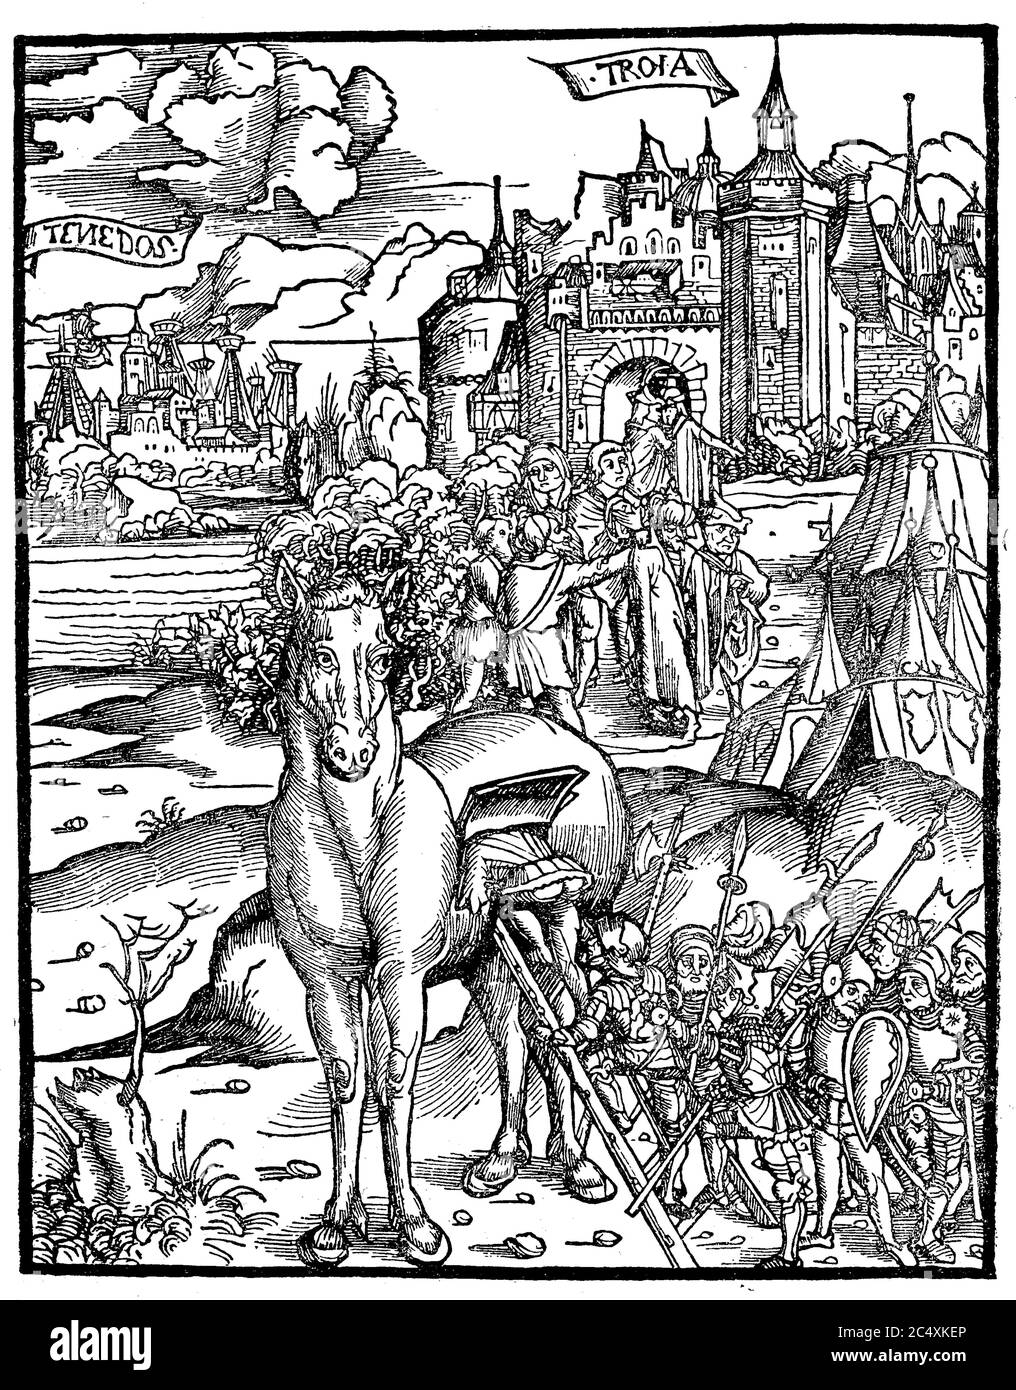 Il cavallo di Troia. I greci entrano nel cavallo di legno all'assedio di Troy / Das trojanische Pferd. Die Griechen Steigen in den Bereich von Dienstleistungen Foto Stock